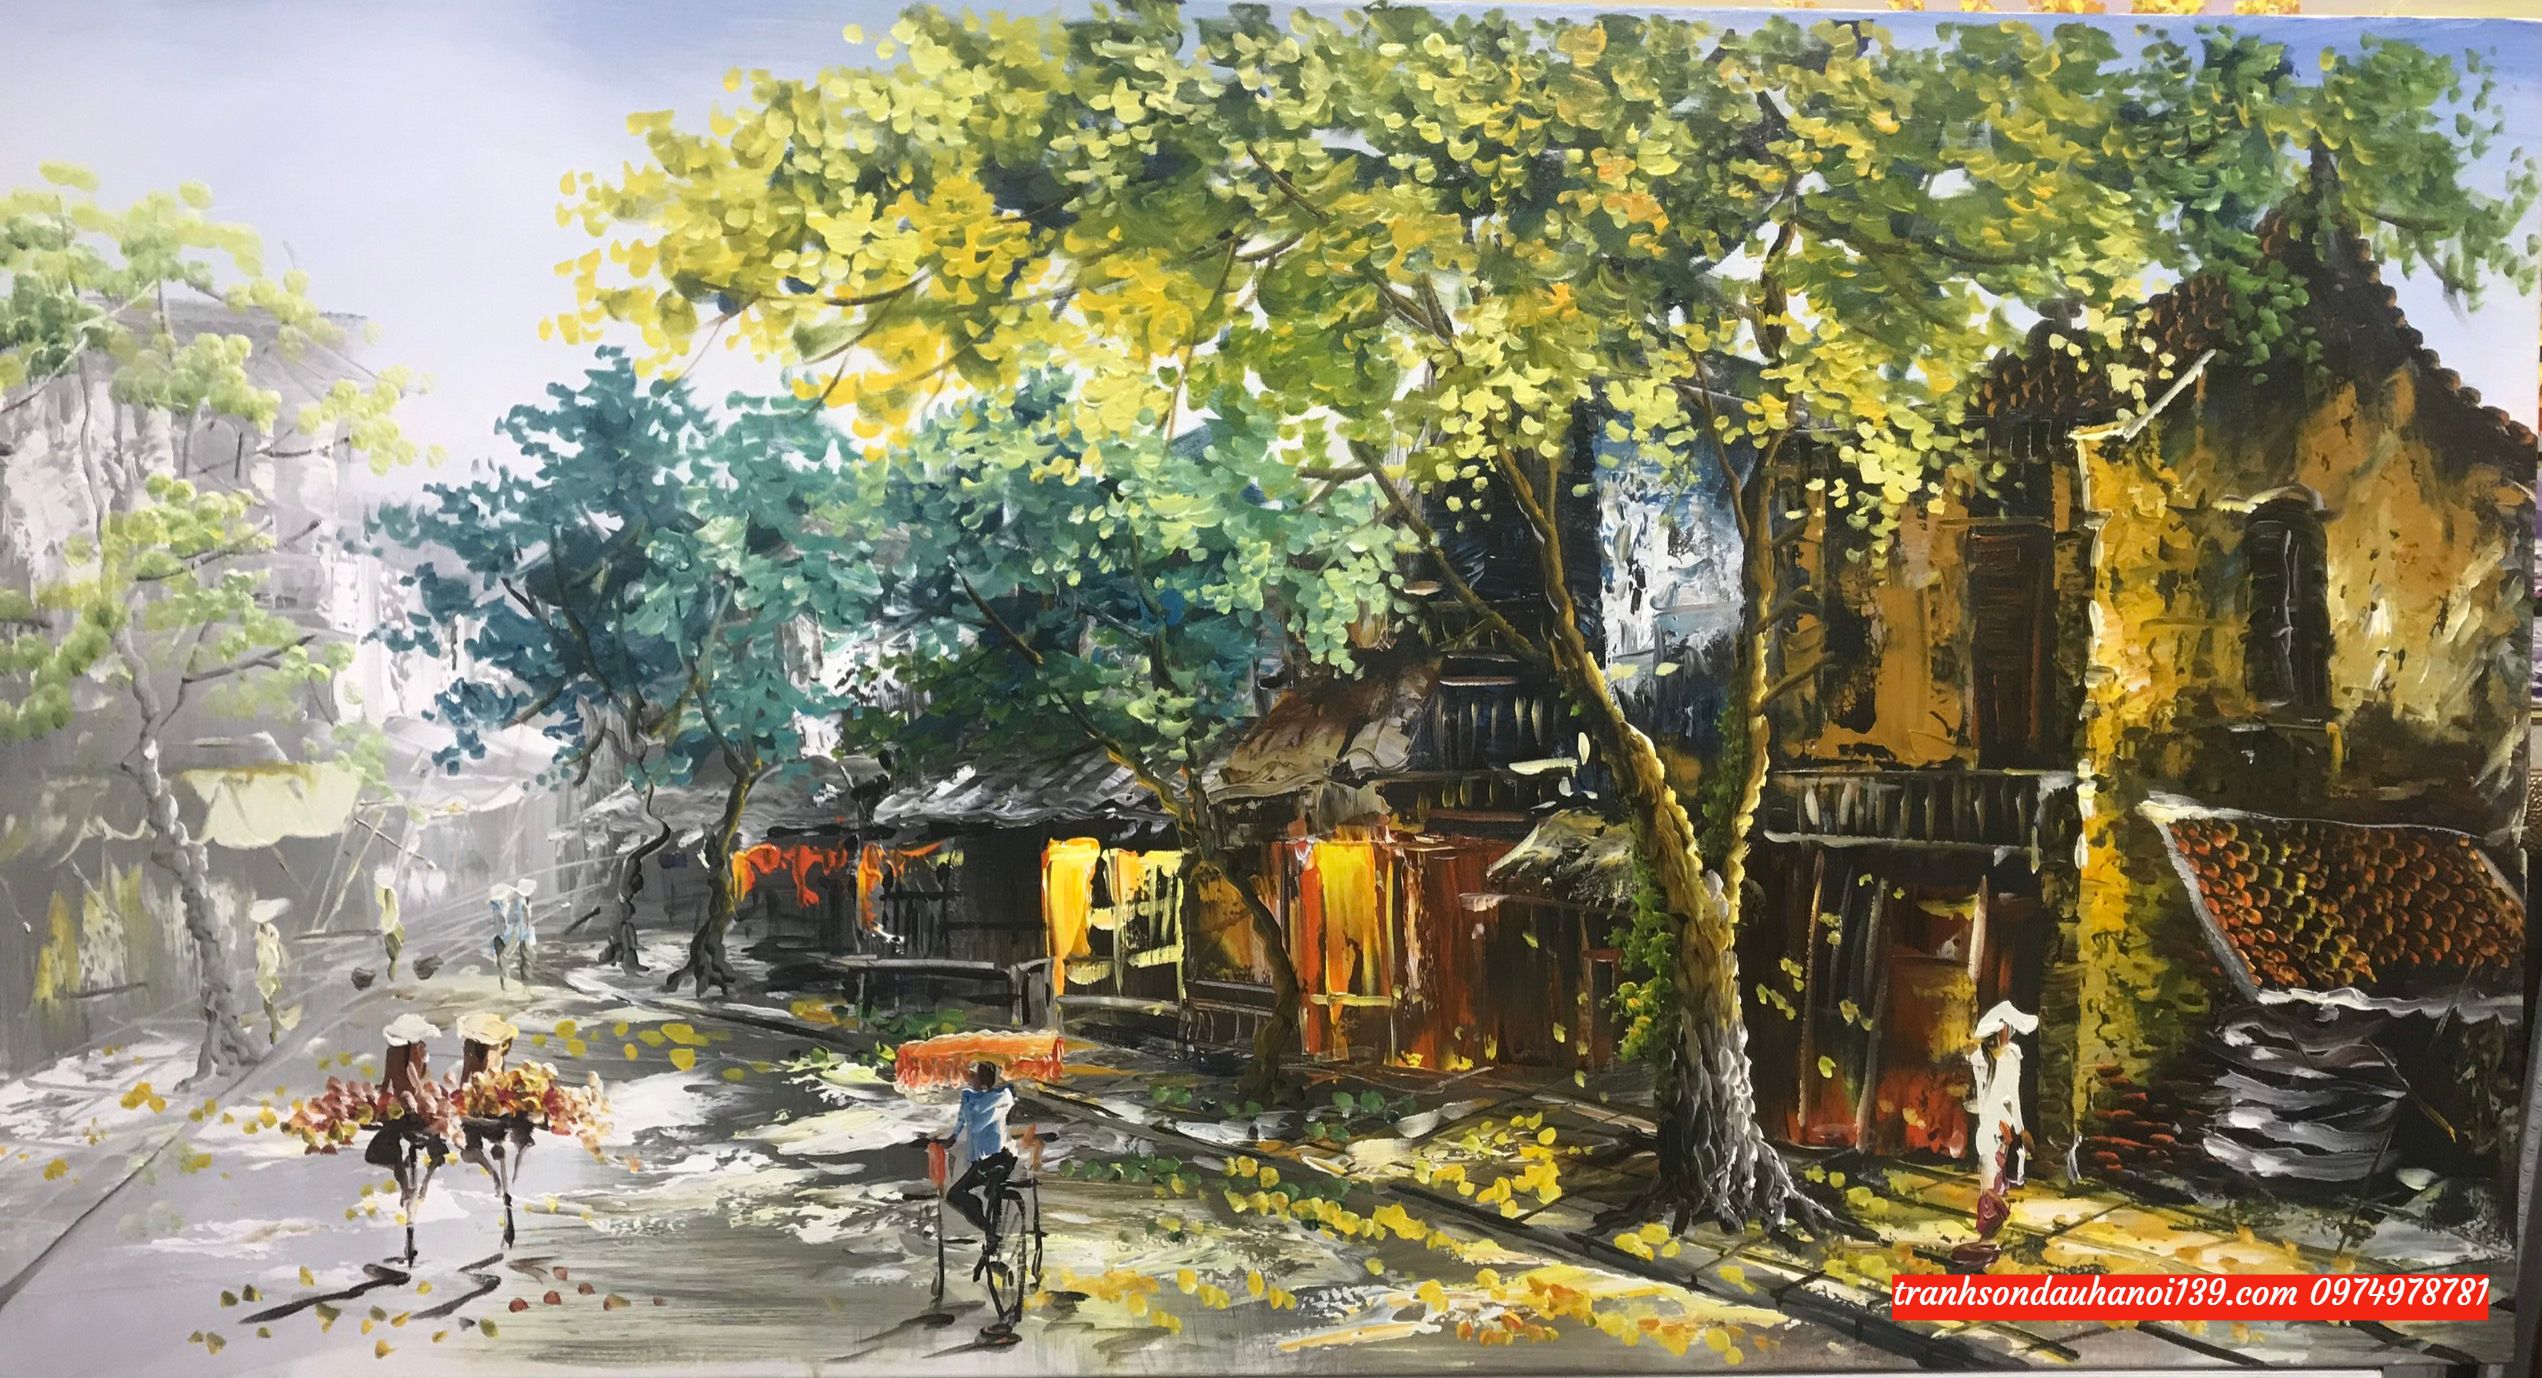 Tranh phố cổ hà nội tranh vẽ sơn dầu SB190 - Tranh Sơn Dầu Đẹp Việt - Xưởng  tranh sơn dầu